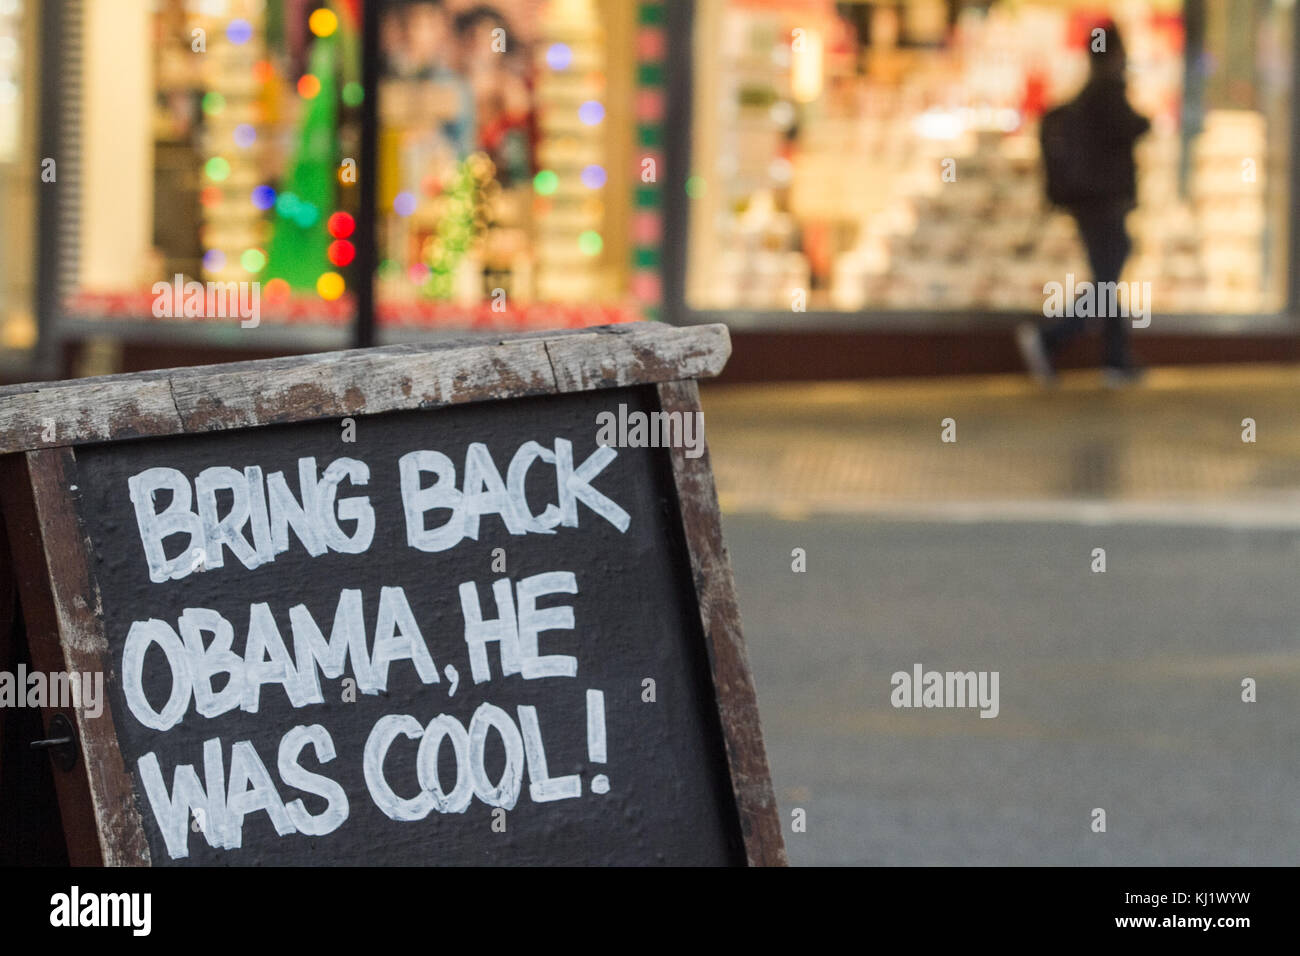 London uk. 20 novembre 2017. un pub à l'extérieur asigne wimbledon indique 'ramener obama il était cool" en Reference (référence à l'ancien président des États-Unis, Barack Obama, qui a quitté ses fonctions en janvier 2017 après 2 trimestres crédit : amer ghazzal/Alamy live news Banque D'Images